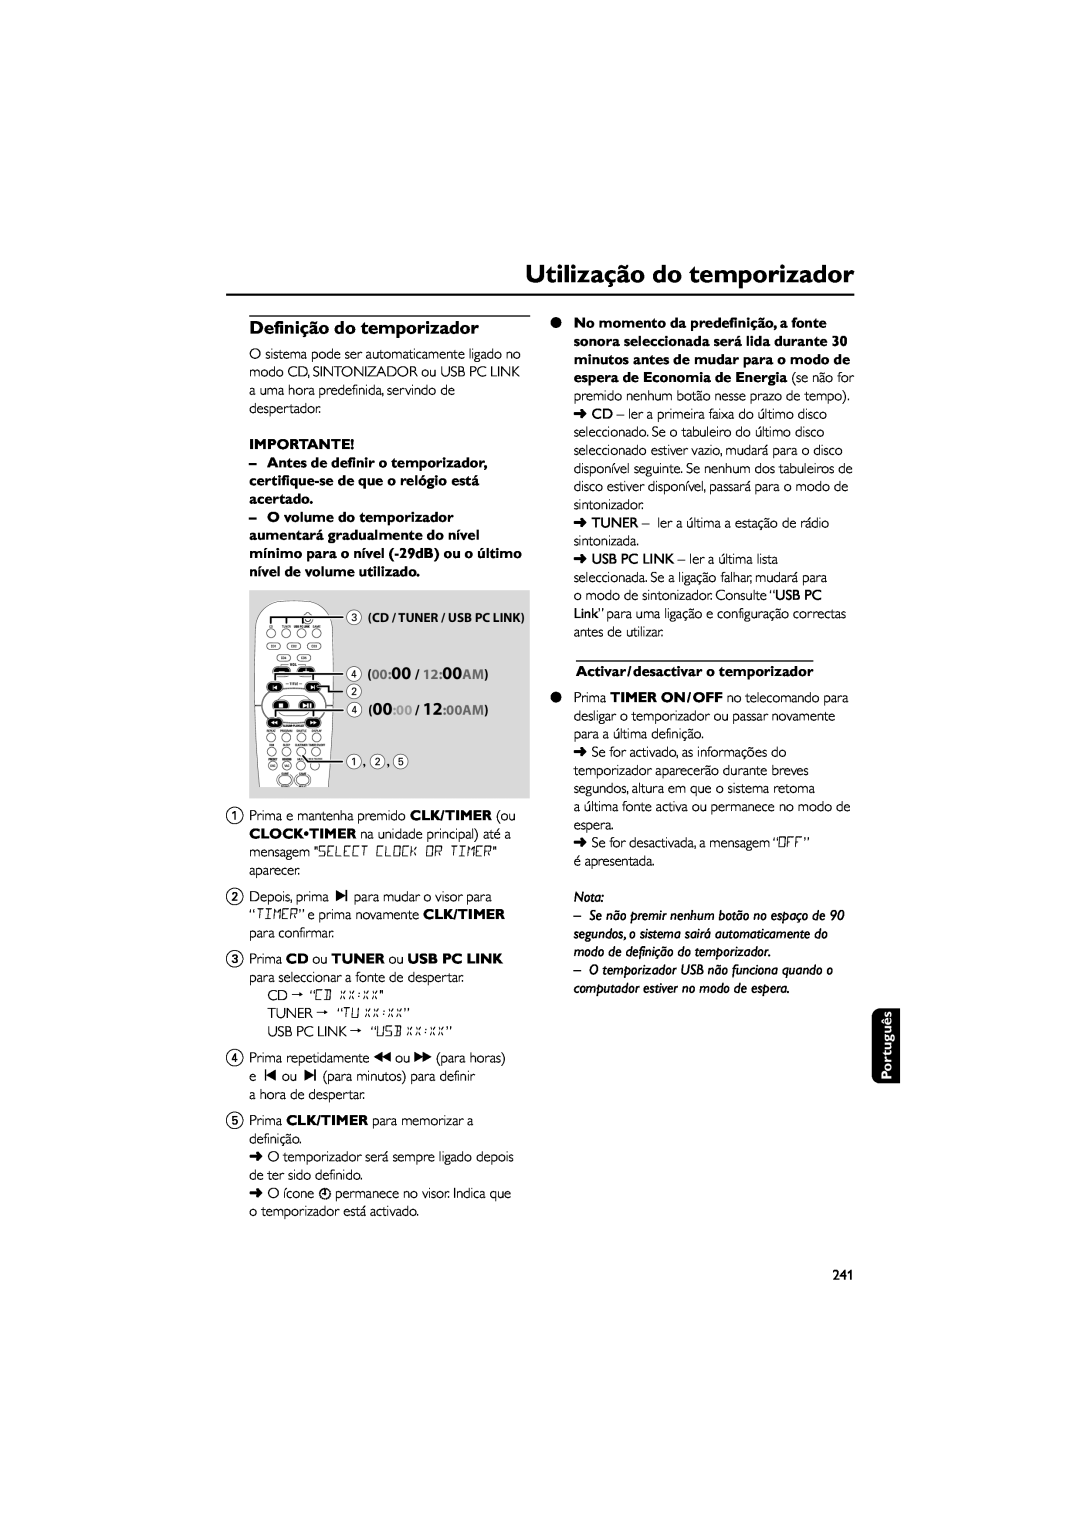 Philips FWM589 manual Utilização do temporizador, Importante, 4 00 00 / 12 00AM, Activar/desactivar o temporizador, Nota 